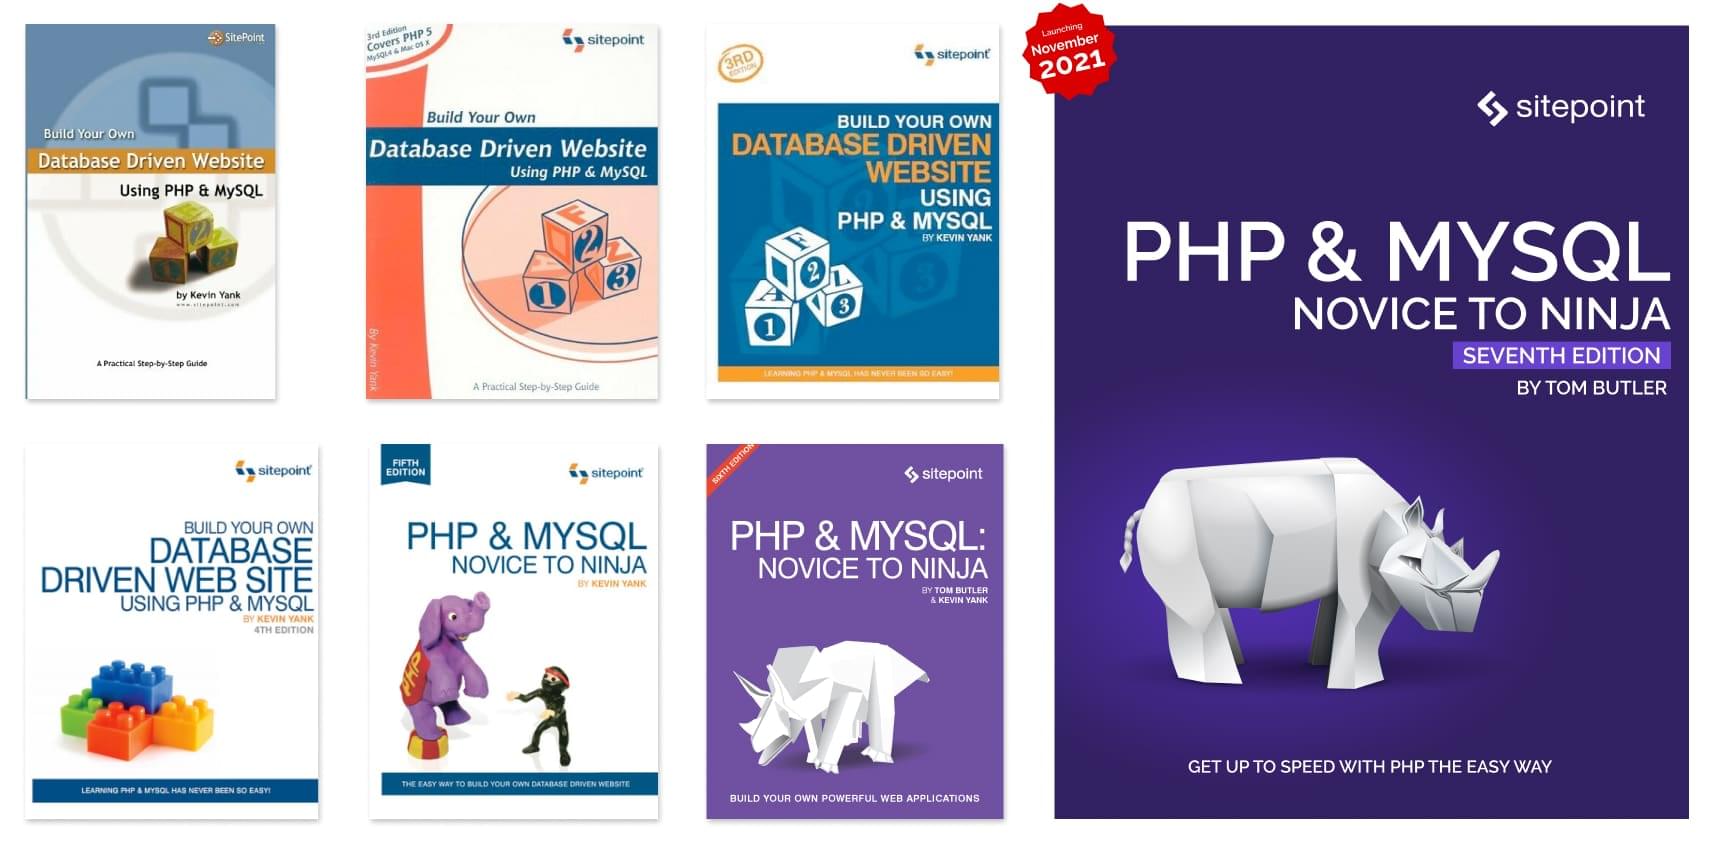 L'evoluzione del nostro libro PHP in 20 anni